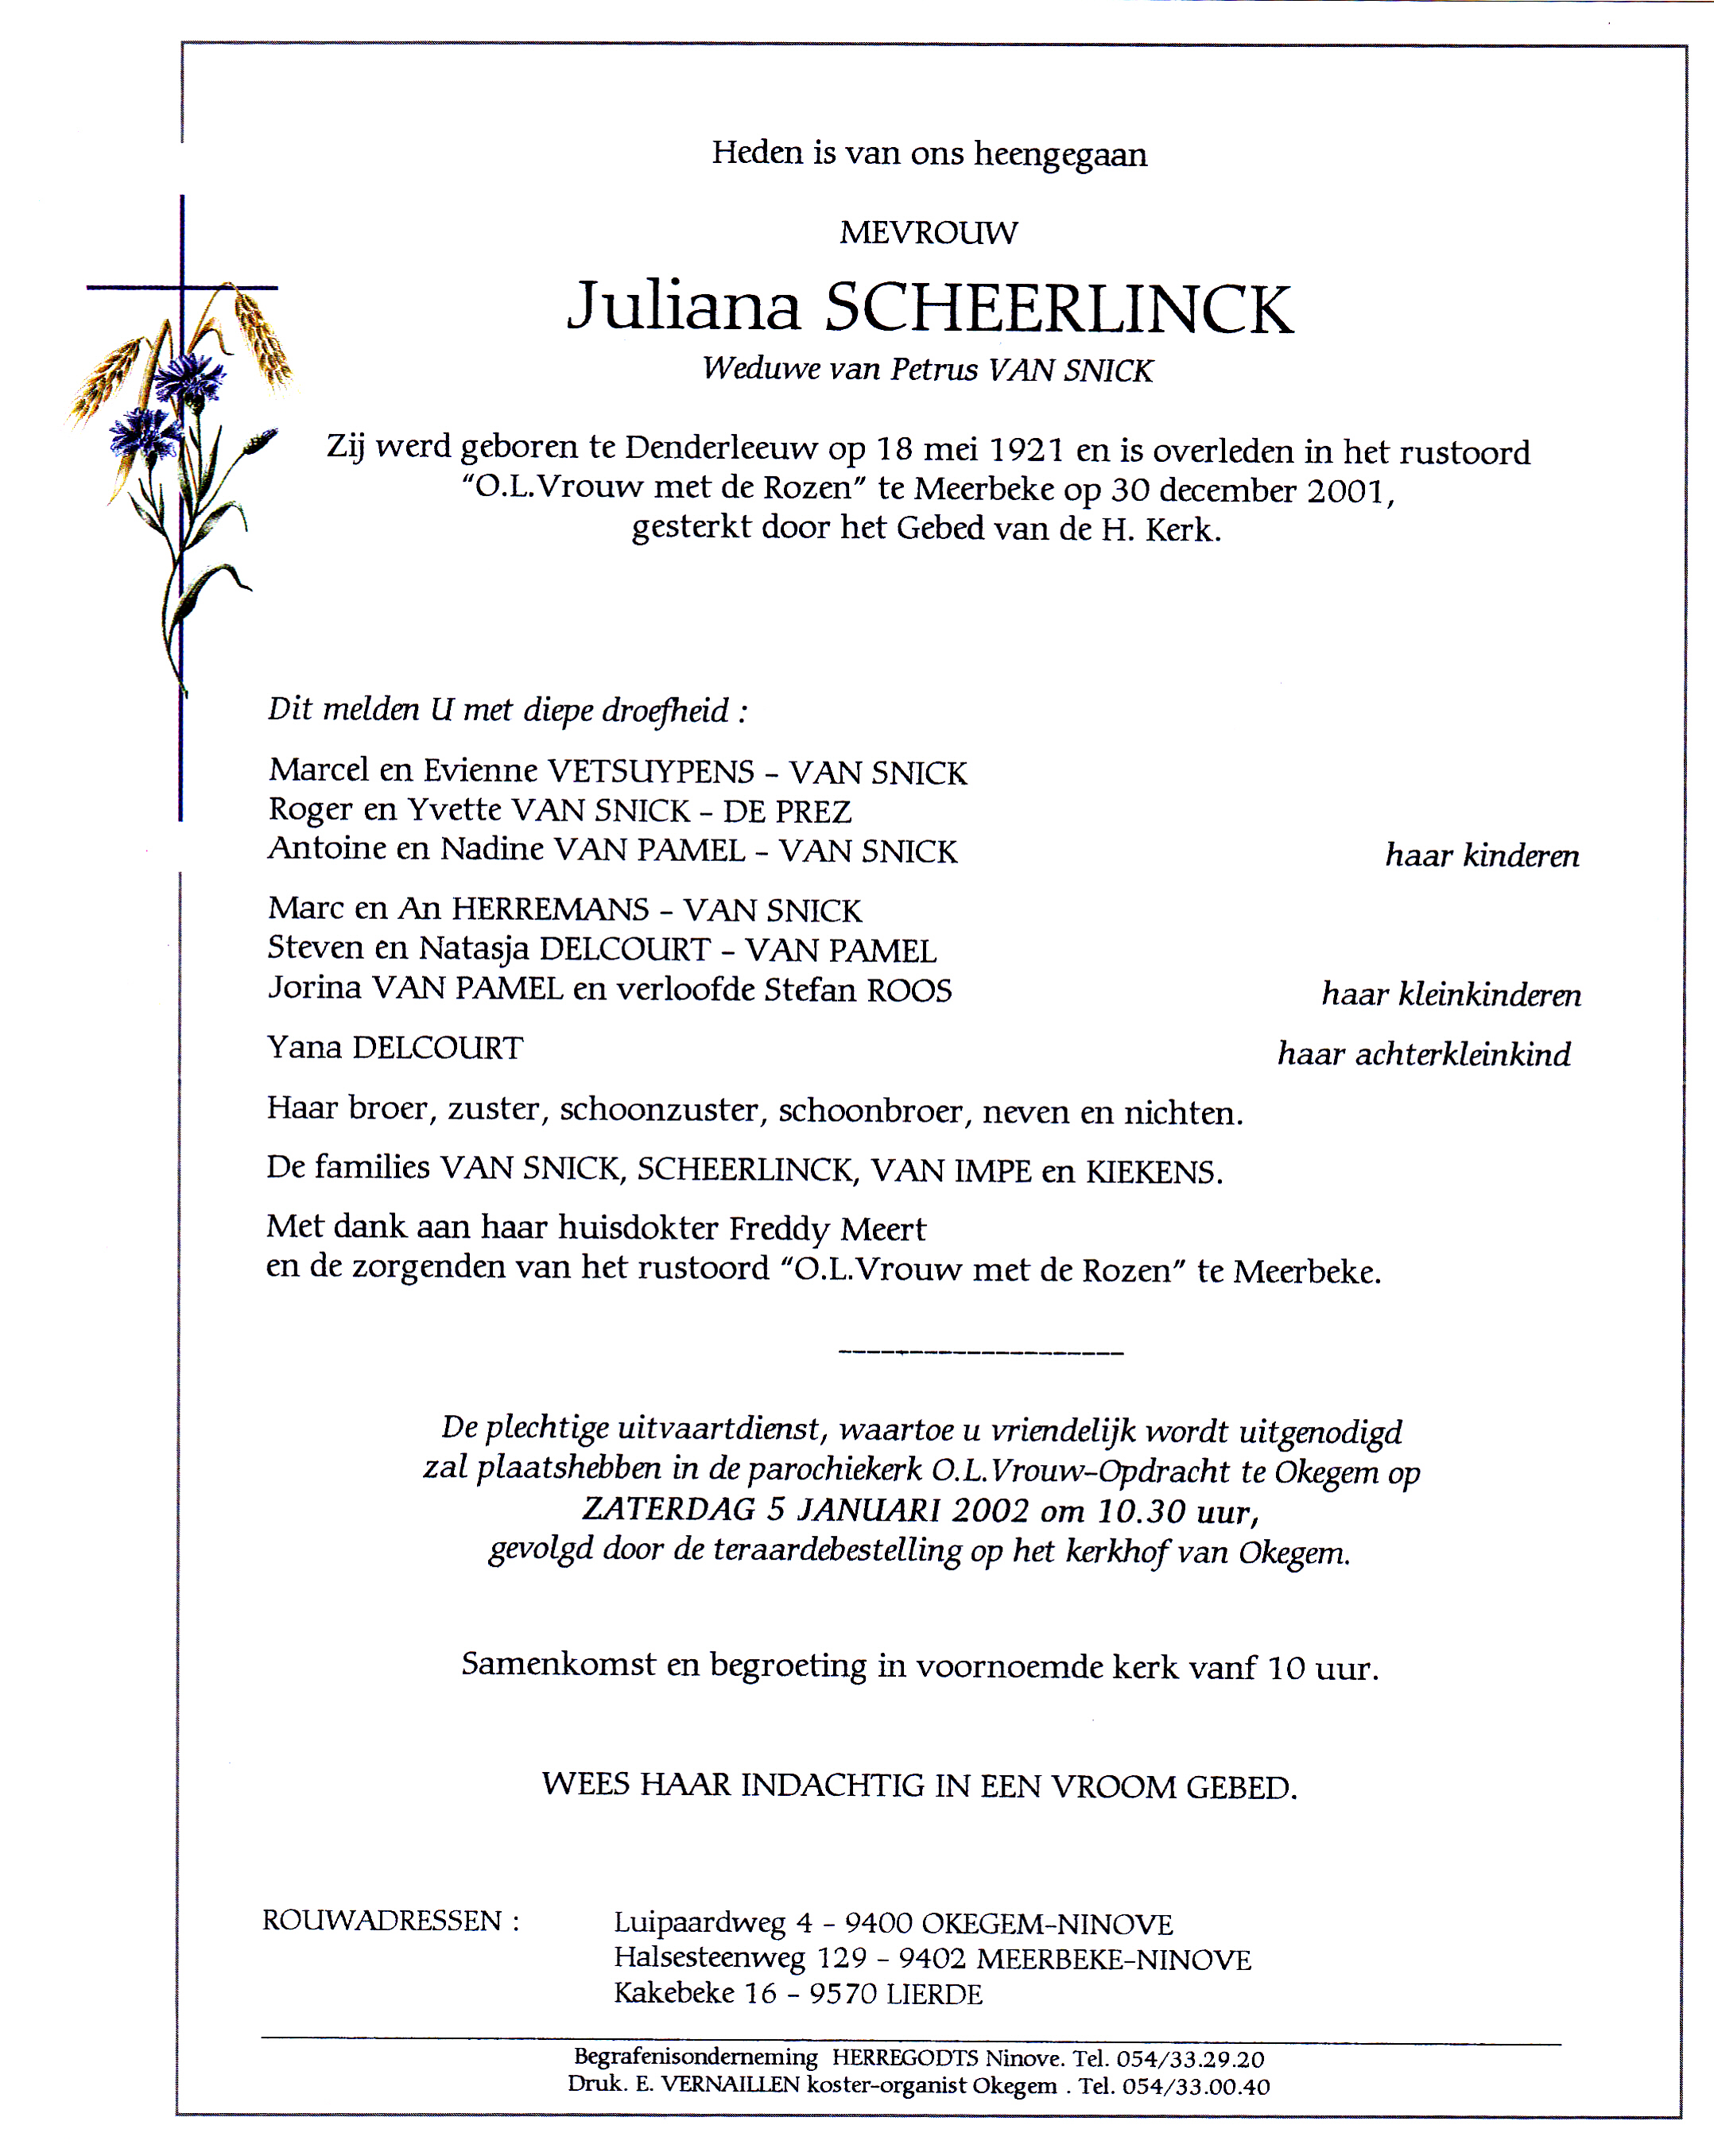 Scheerlinck Juliana 